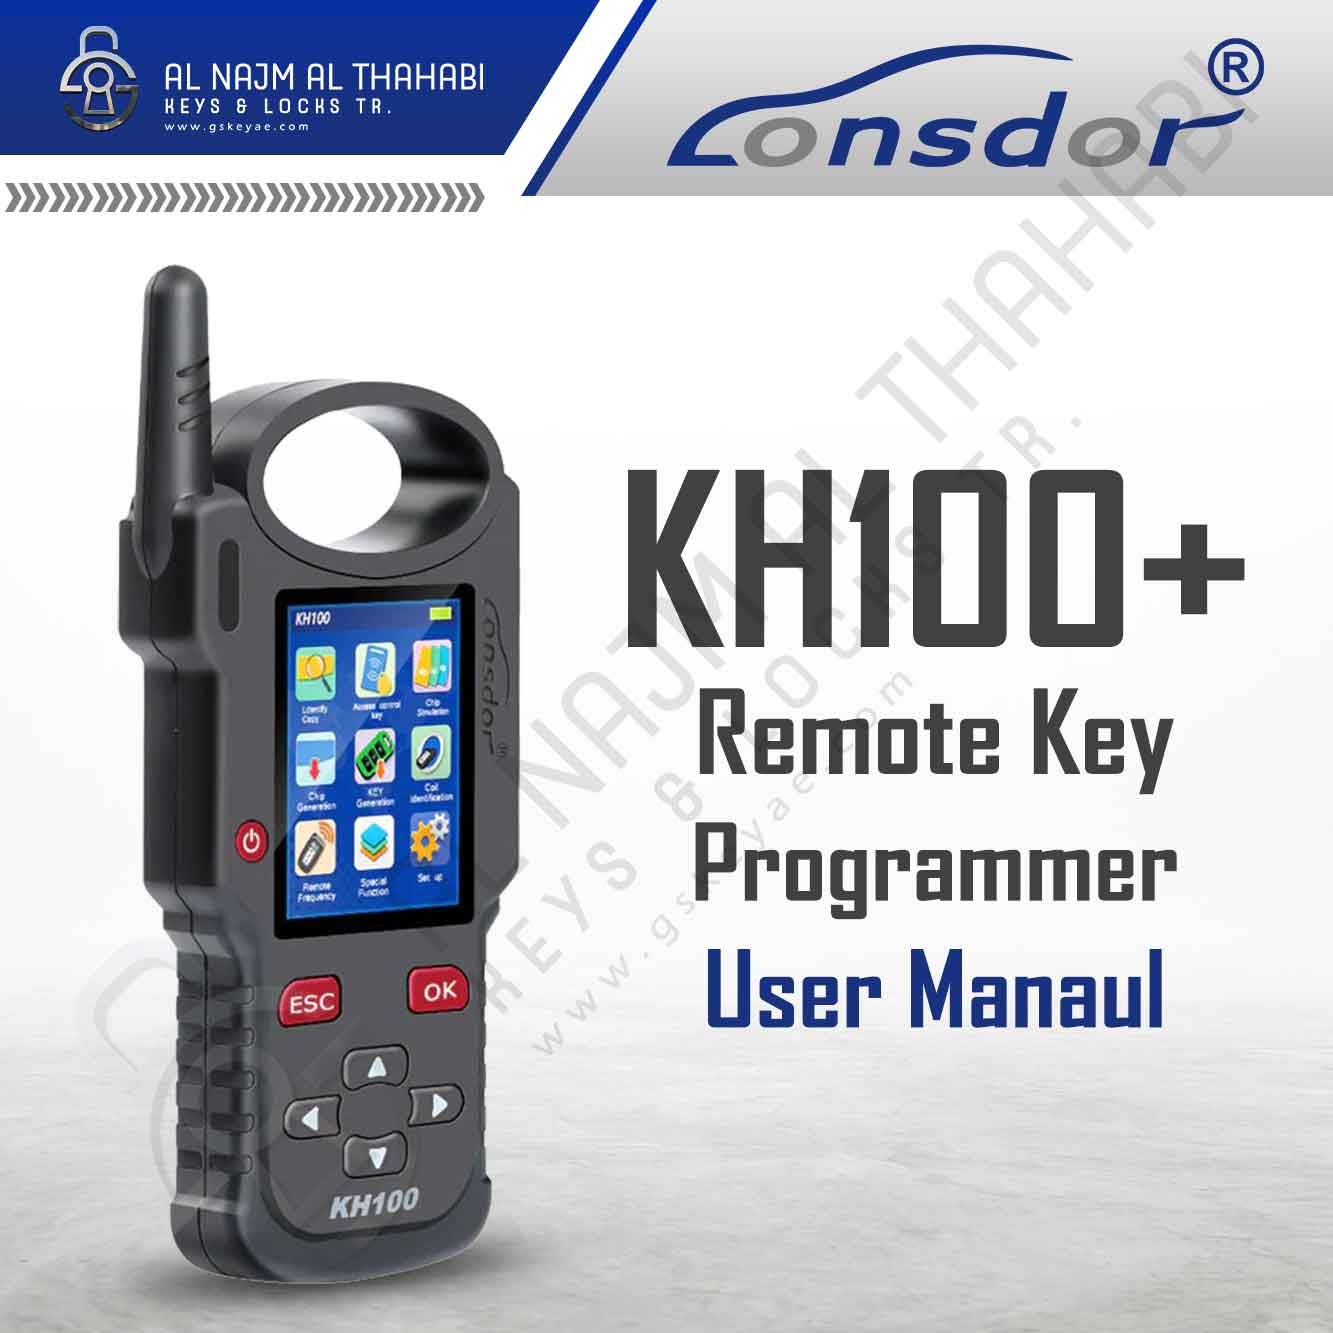 Lonsdor KH100+ Remote Key Programmer User Manual